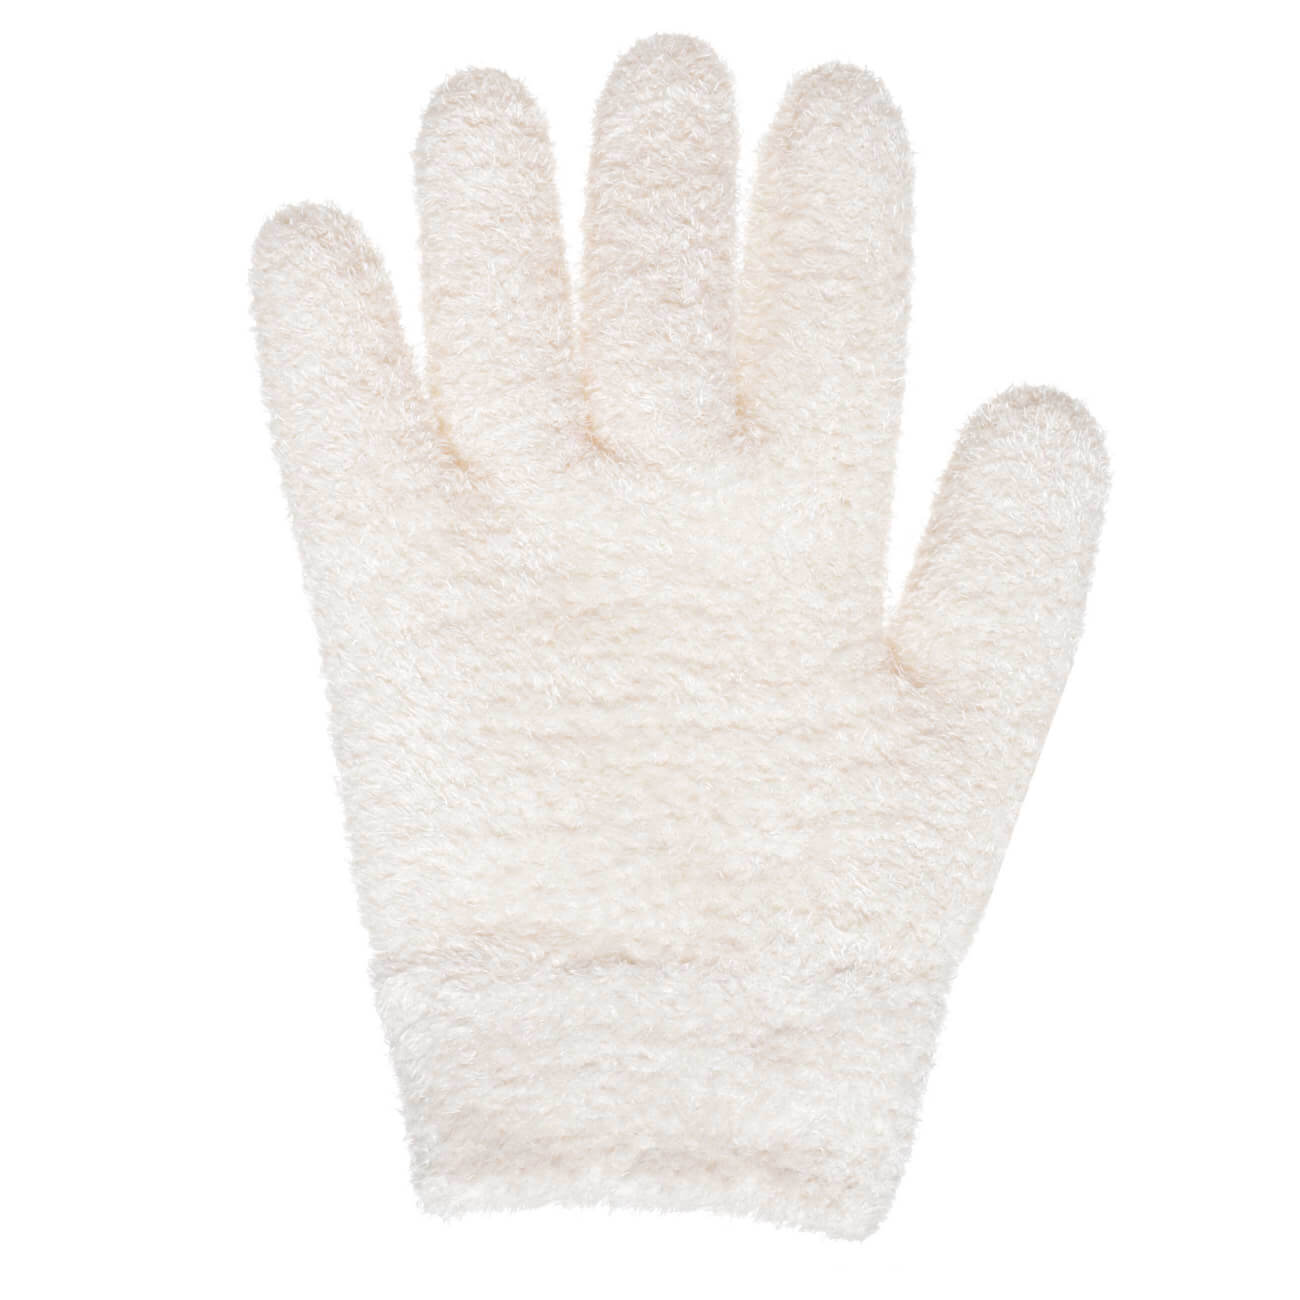 СПА-перчатки гелевые, 20 см, многоразовые, полиэстер, молочные, Spa изображение № 1